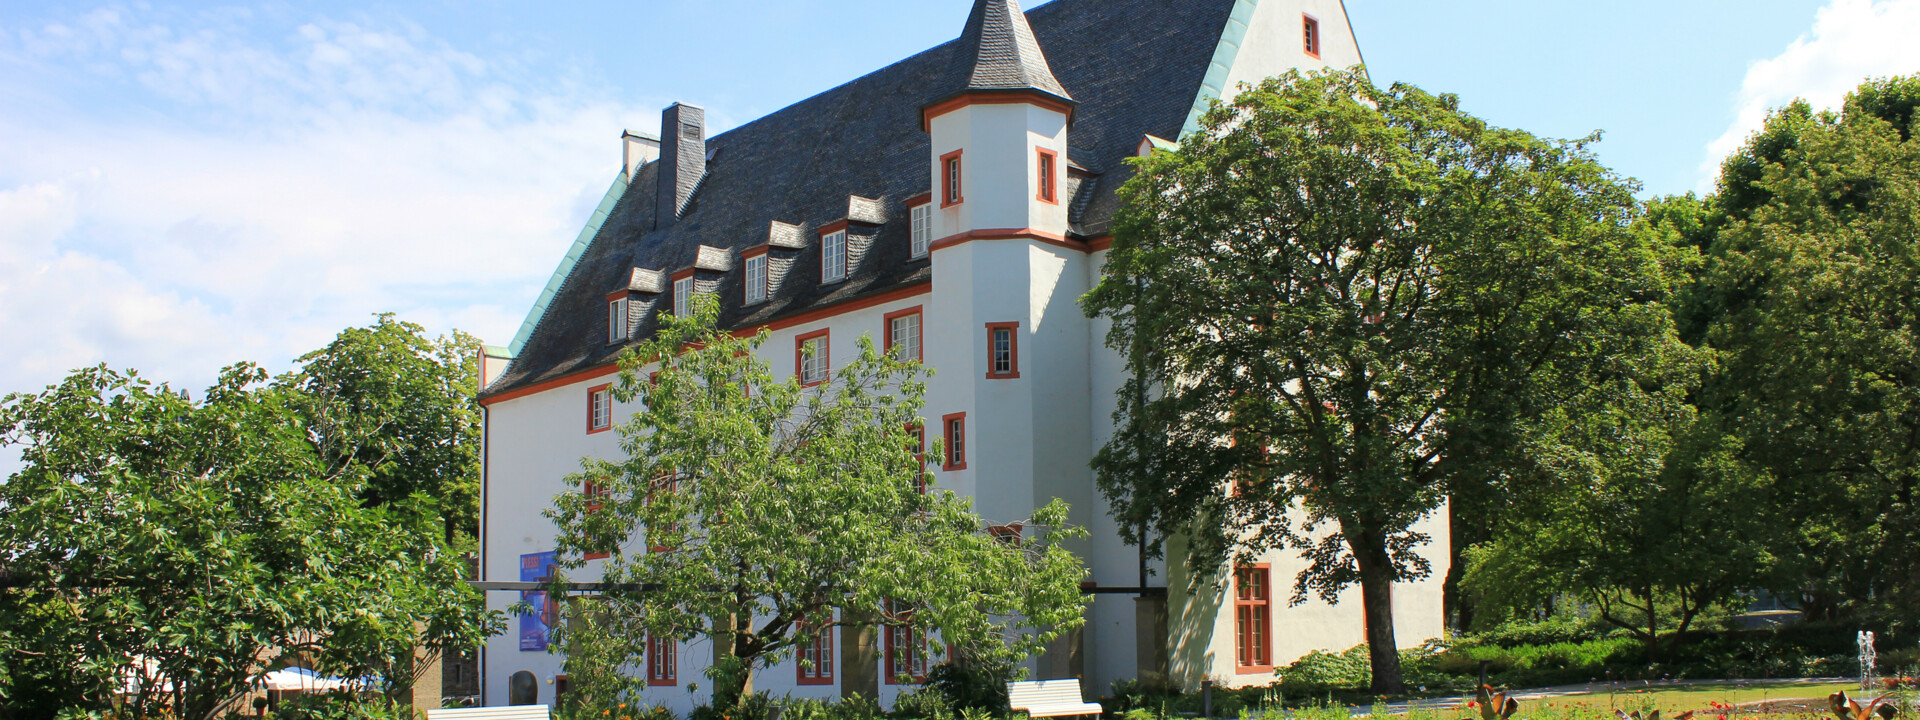 Deutschherrenhaus mit Blumenhof in Vordergrund ©Koblenz-Touristik GmbH